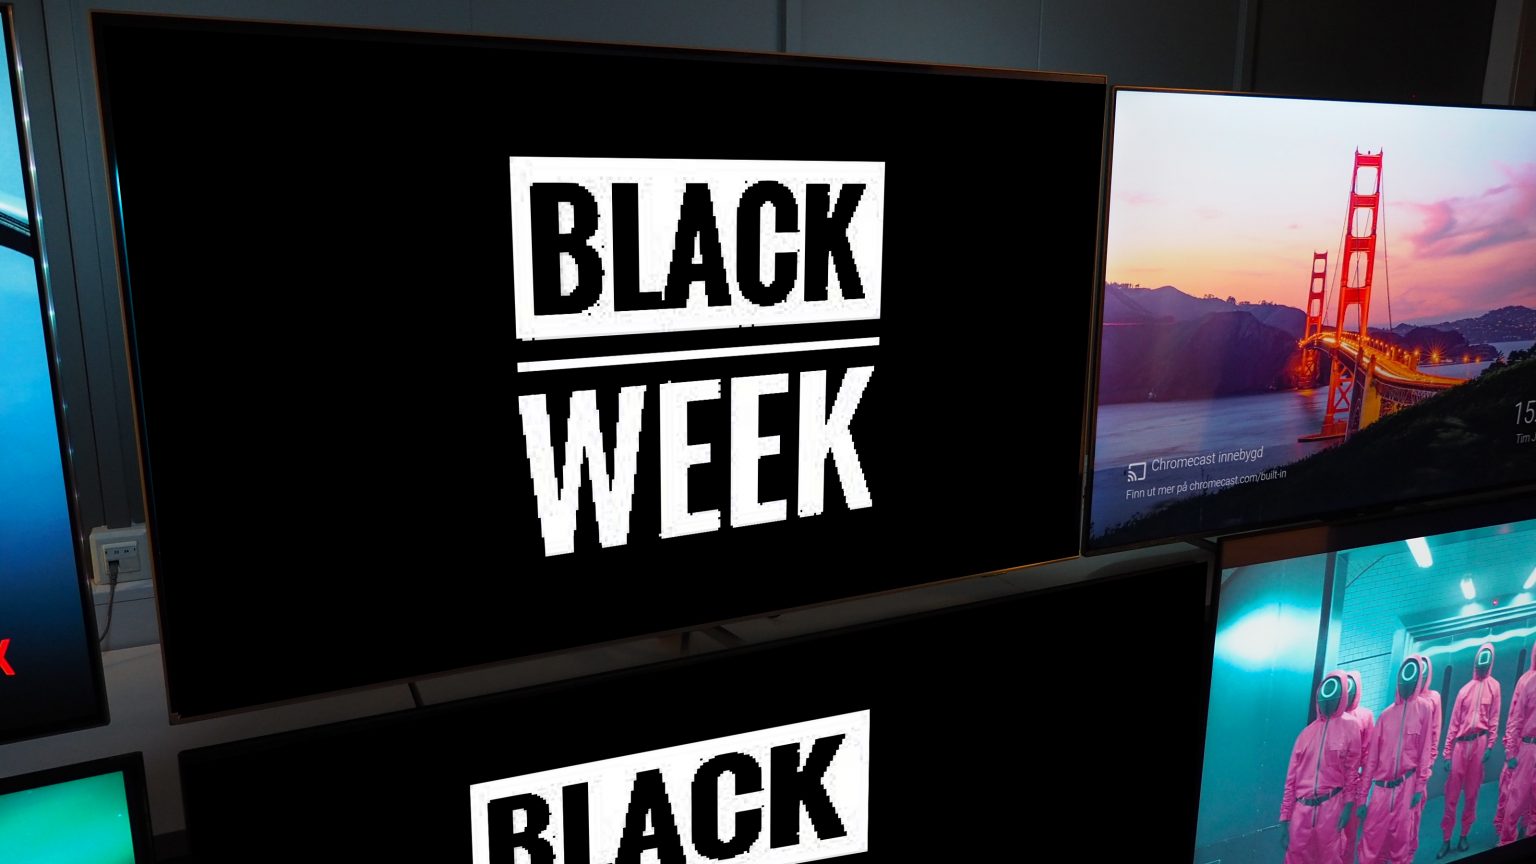 Black Week TV 2021 1536x864 1